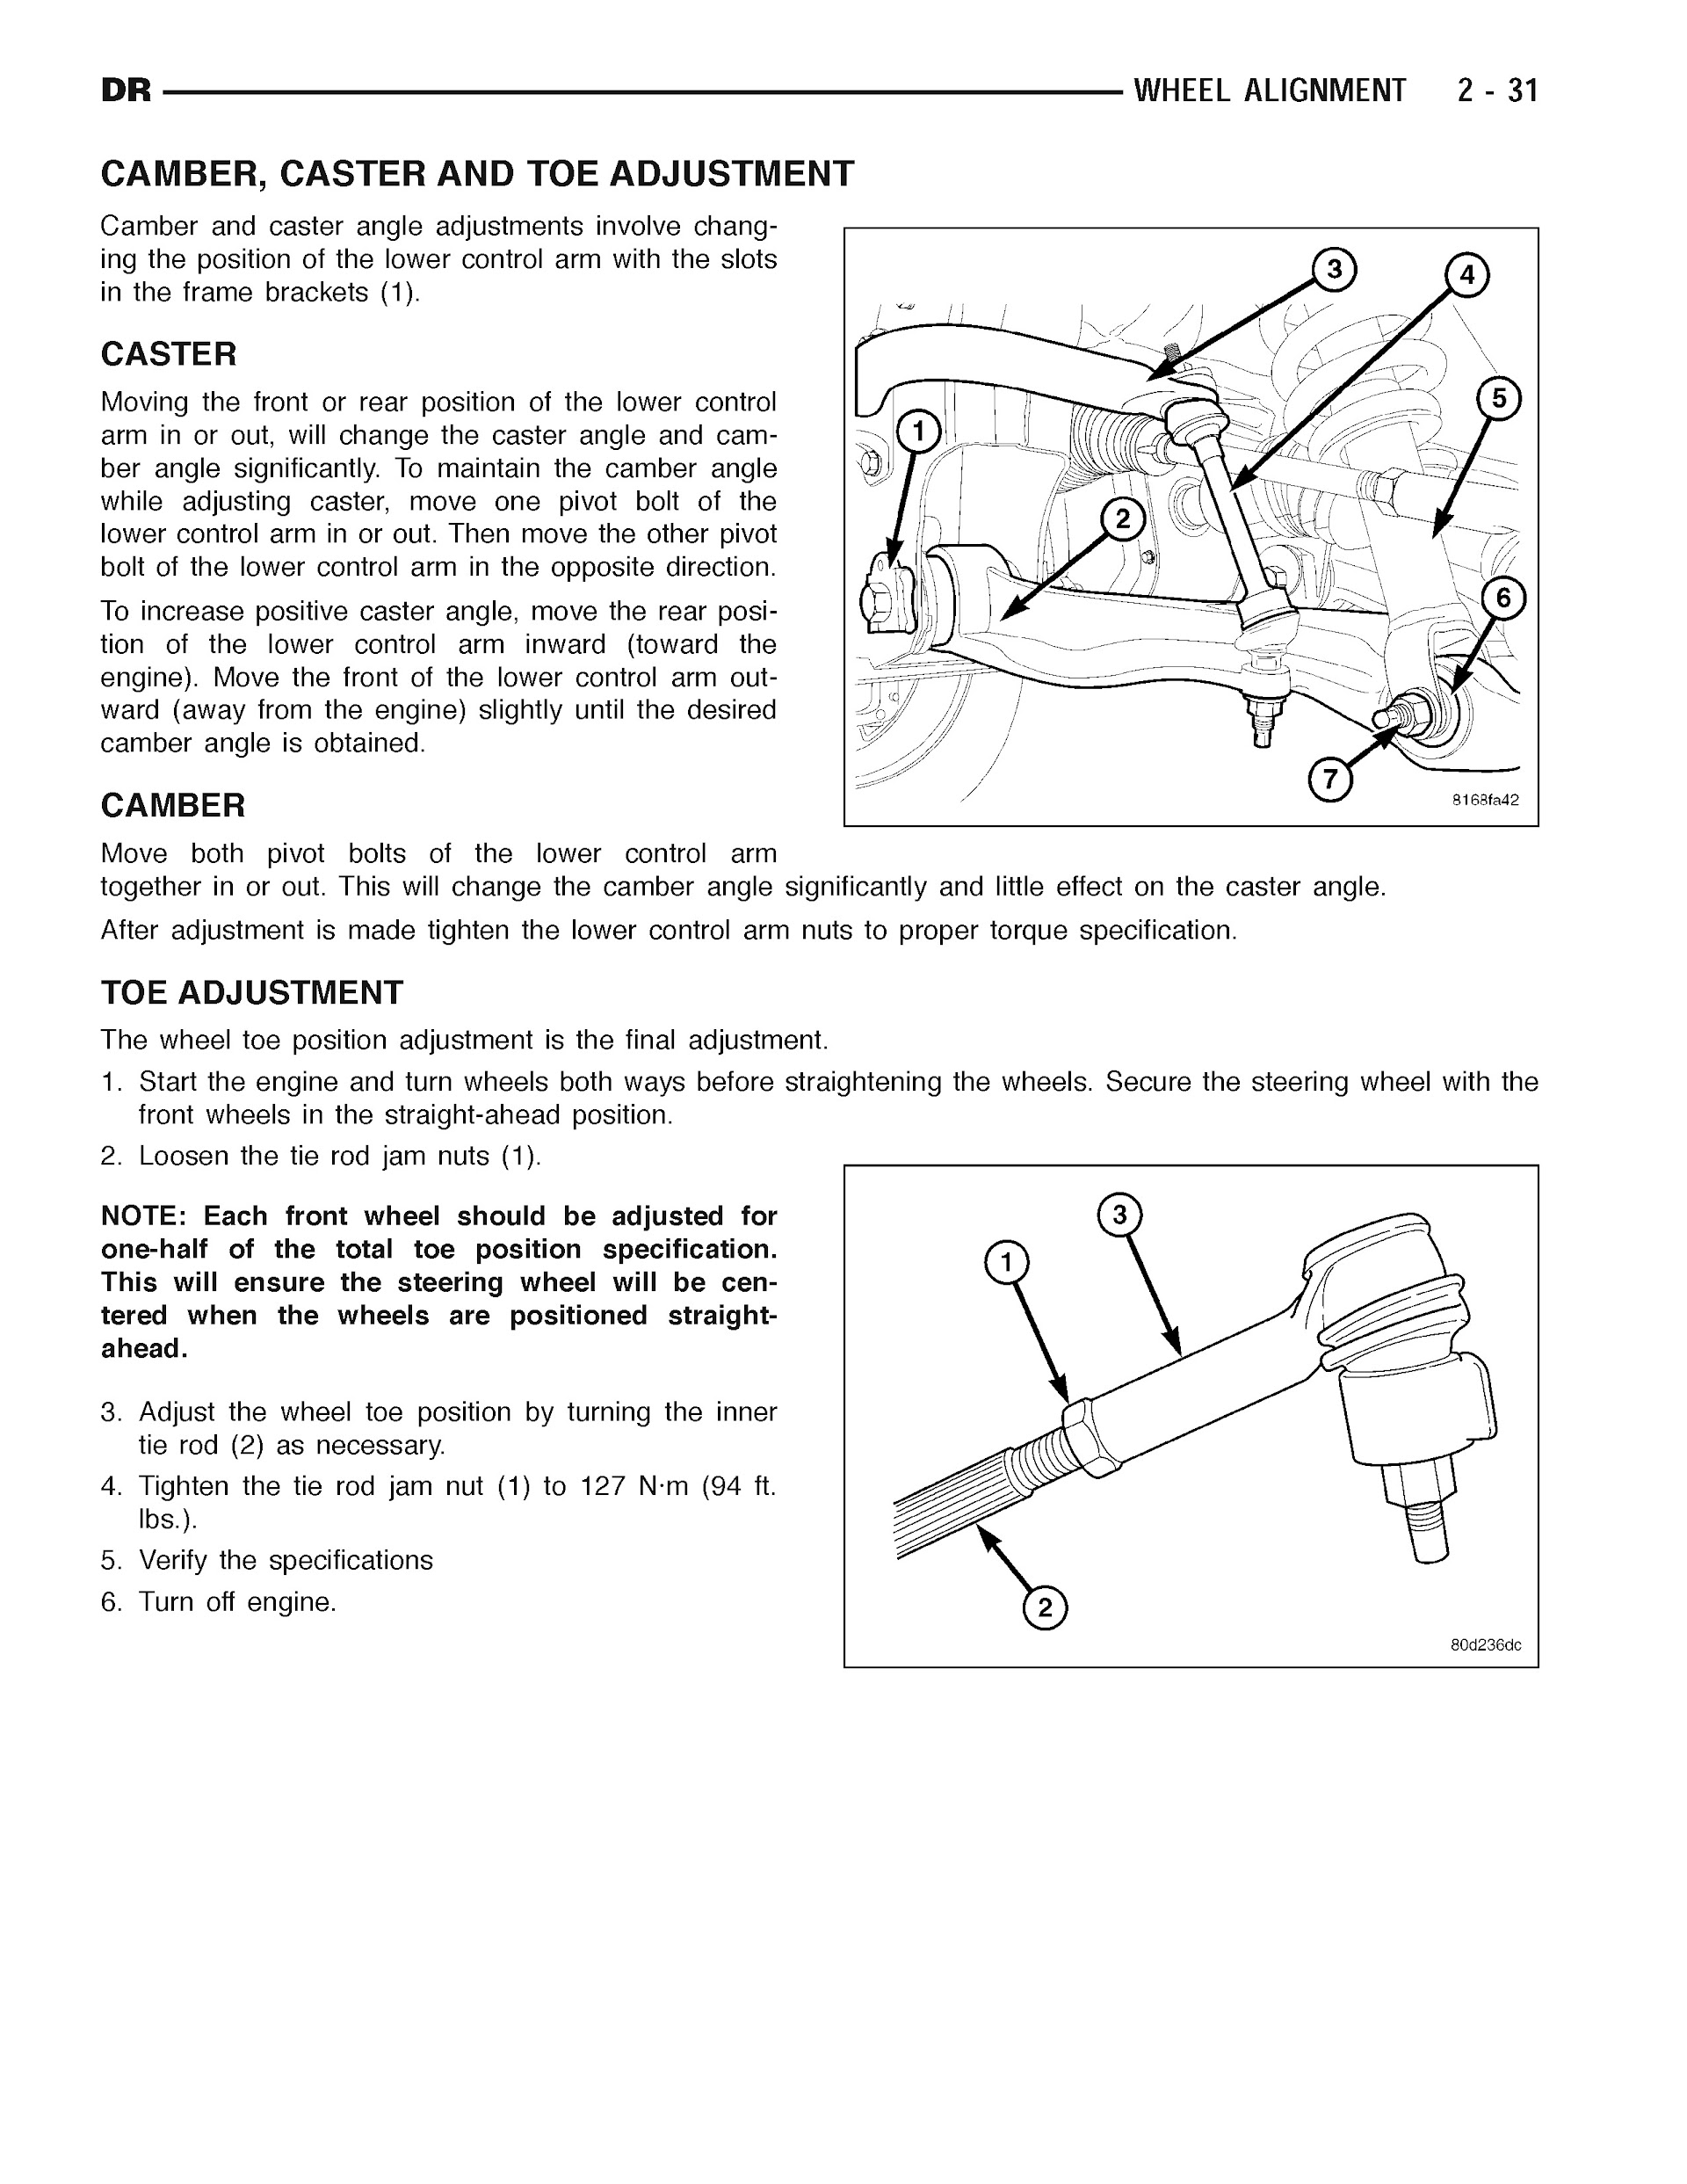 2007 Dodge RAM Repair Manual